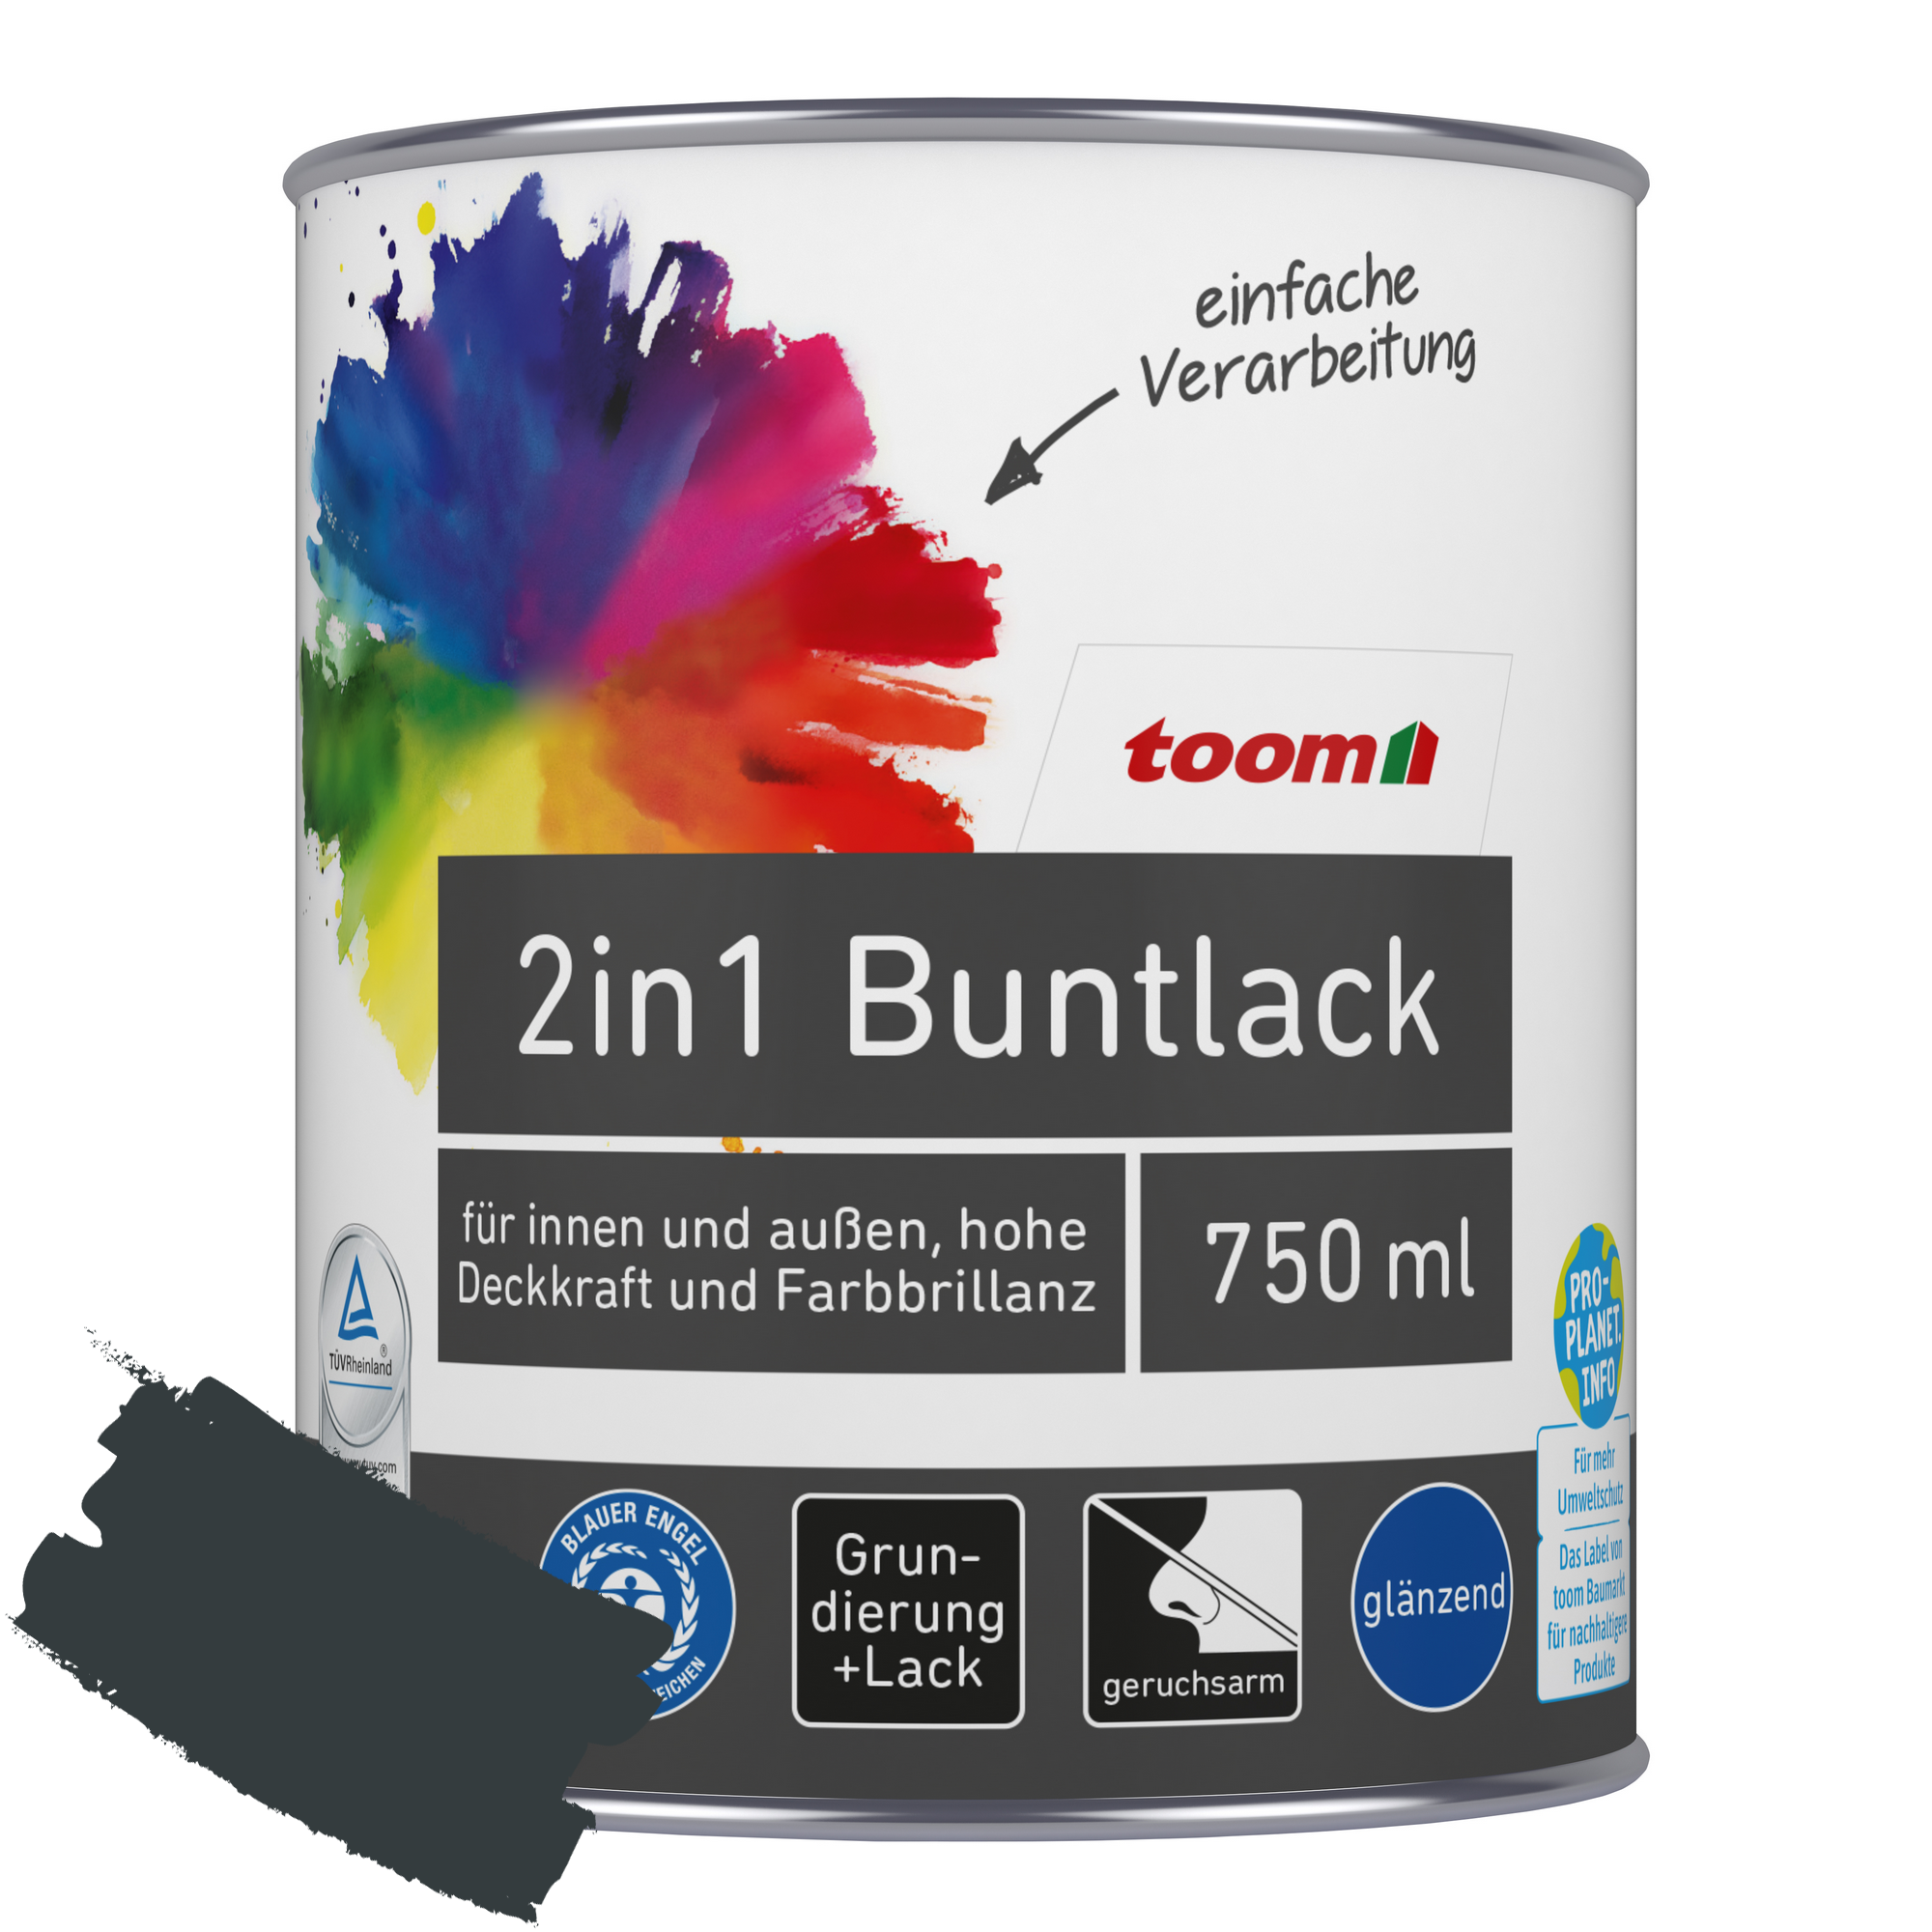 2in1 Buntlack 'Schattenspiel' anthrazitfarben glänzend 750 ml + product picture